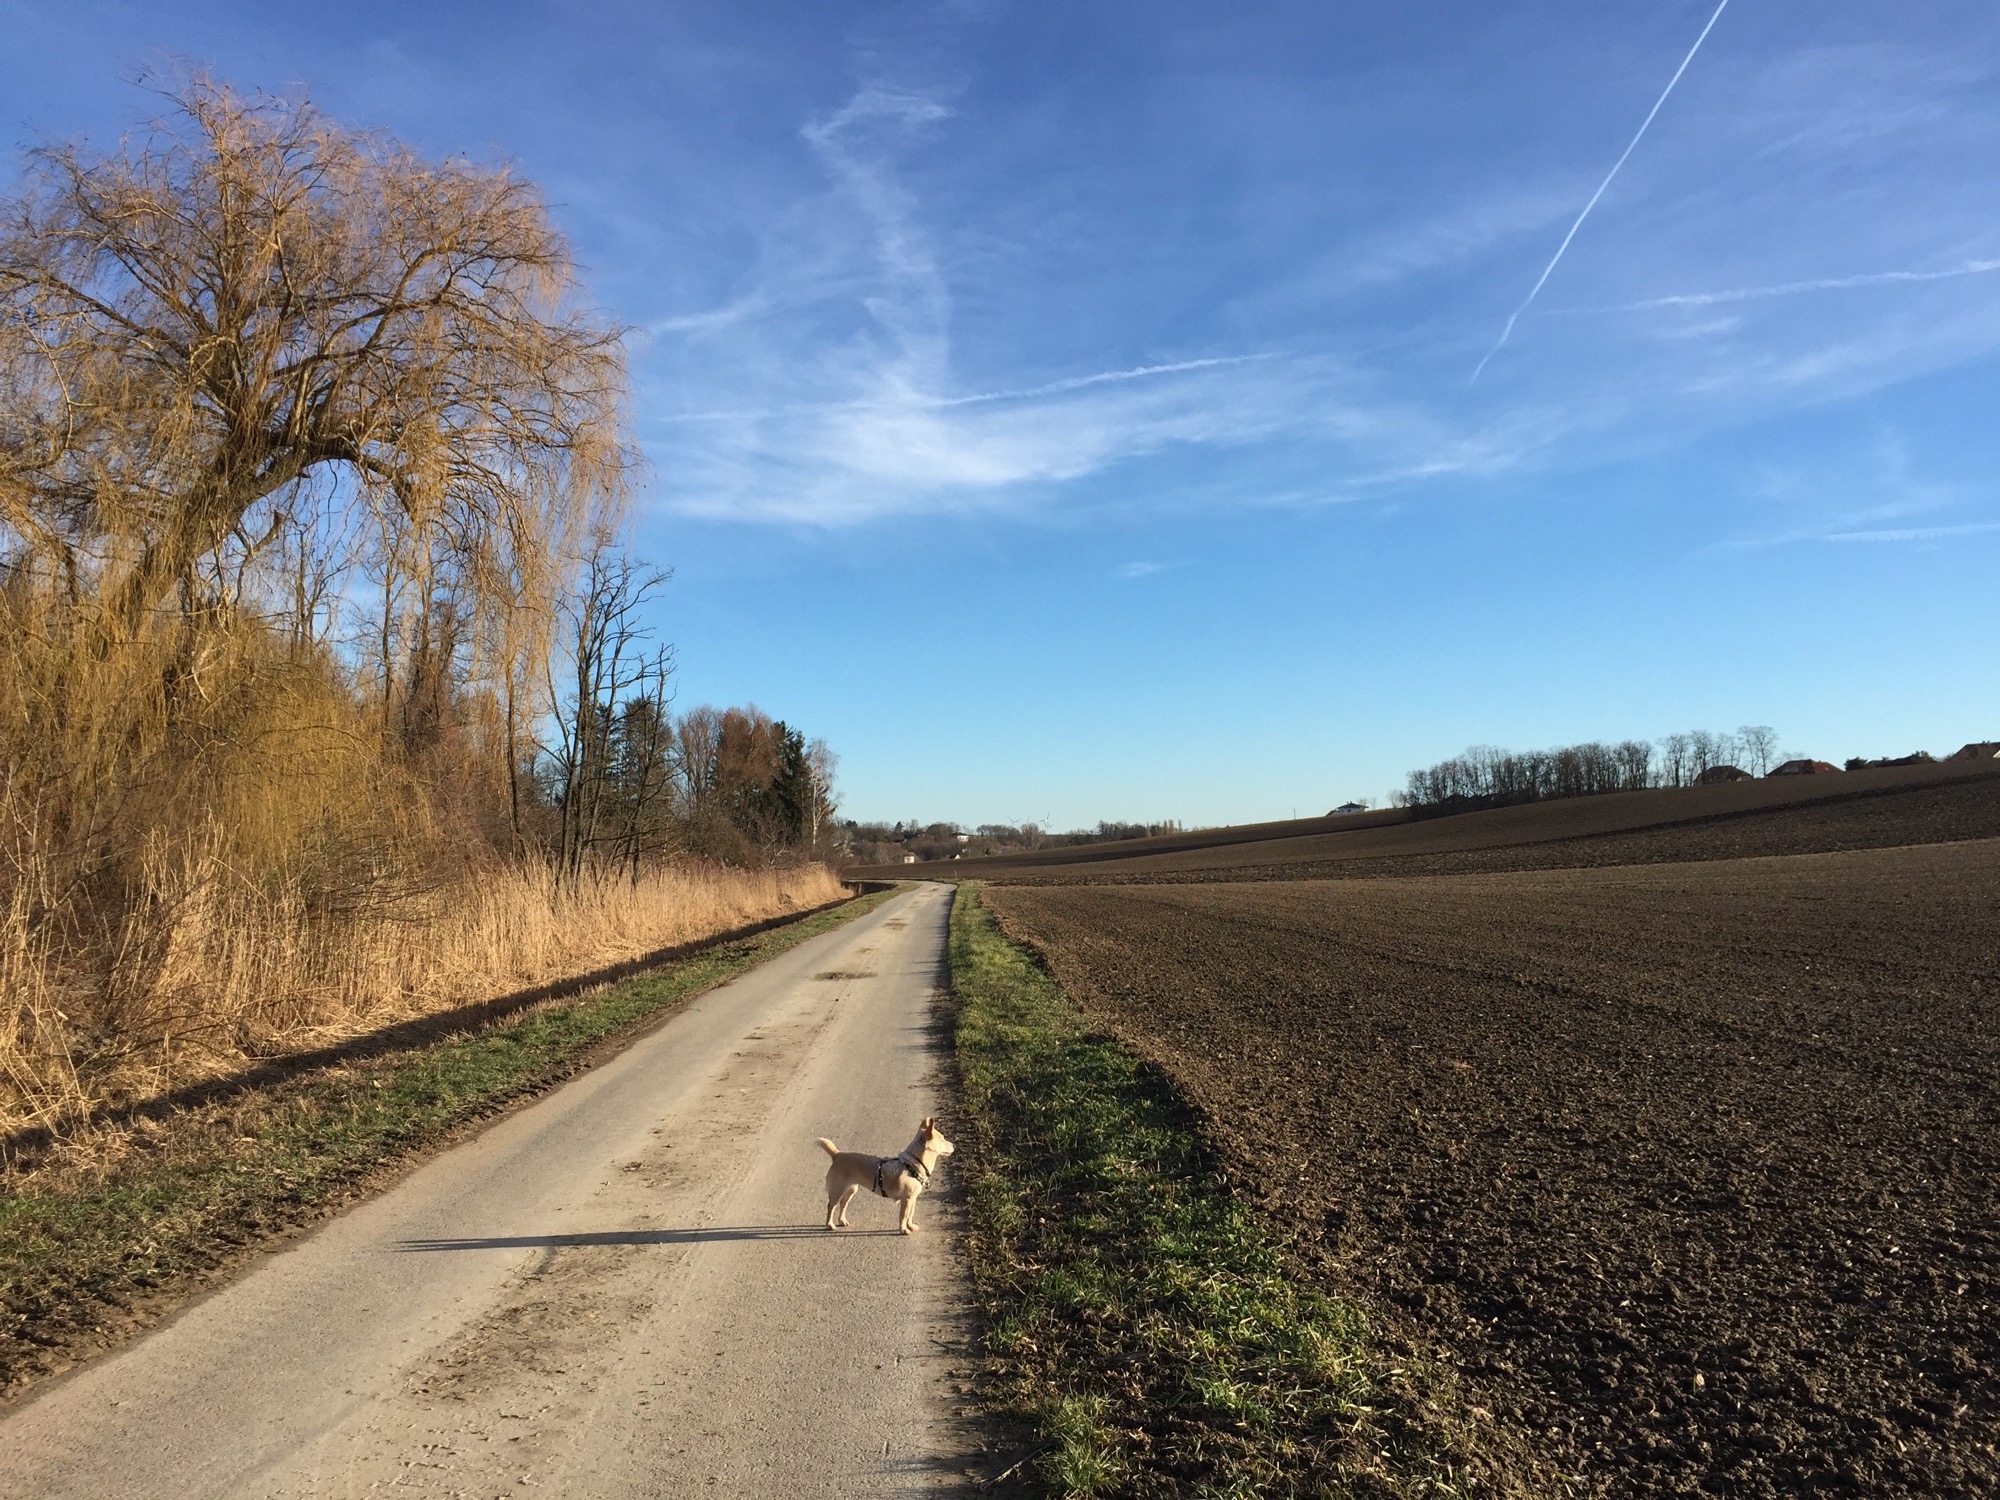 Feldweg außerhalb von Gaweinstal, der Hund schaut Richtung Sonne und wirft einen langen Schatten